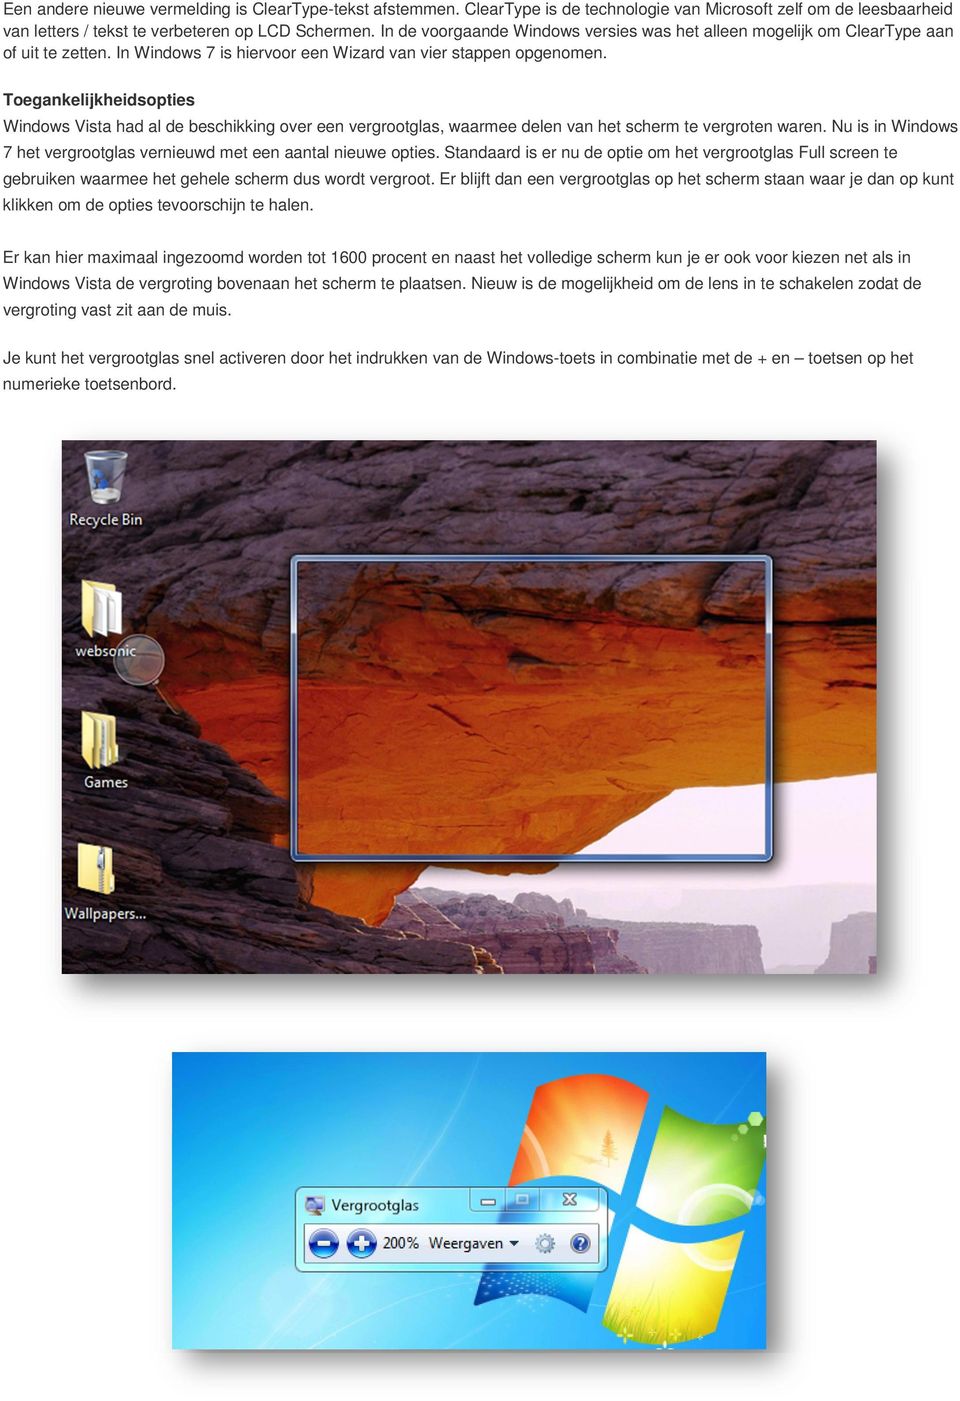 Toegankelijkheidsopties Windows Vista had al de beschikking over een vergrootglas, waarmee delen van het scherm te vergroten waren.